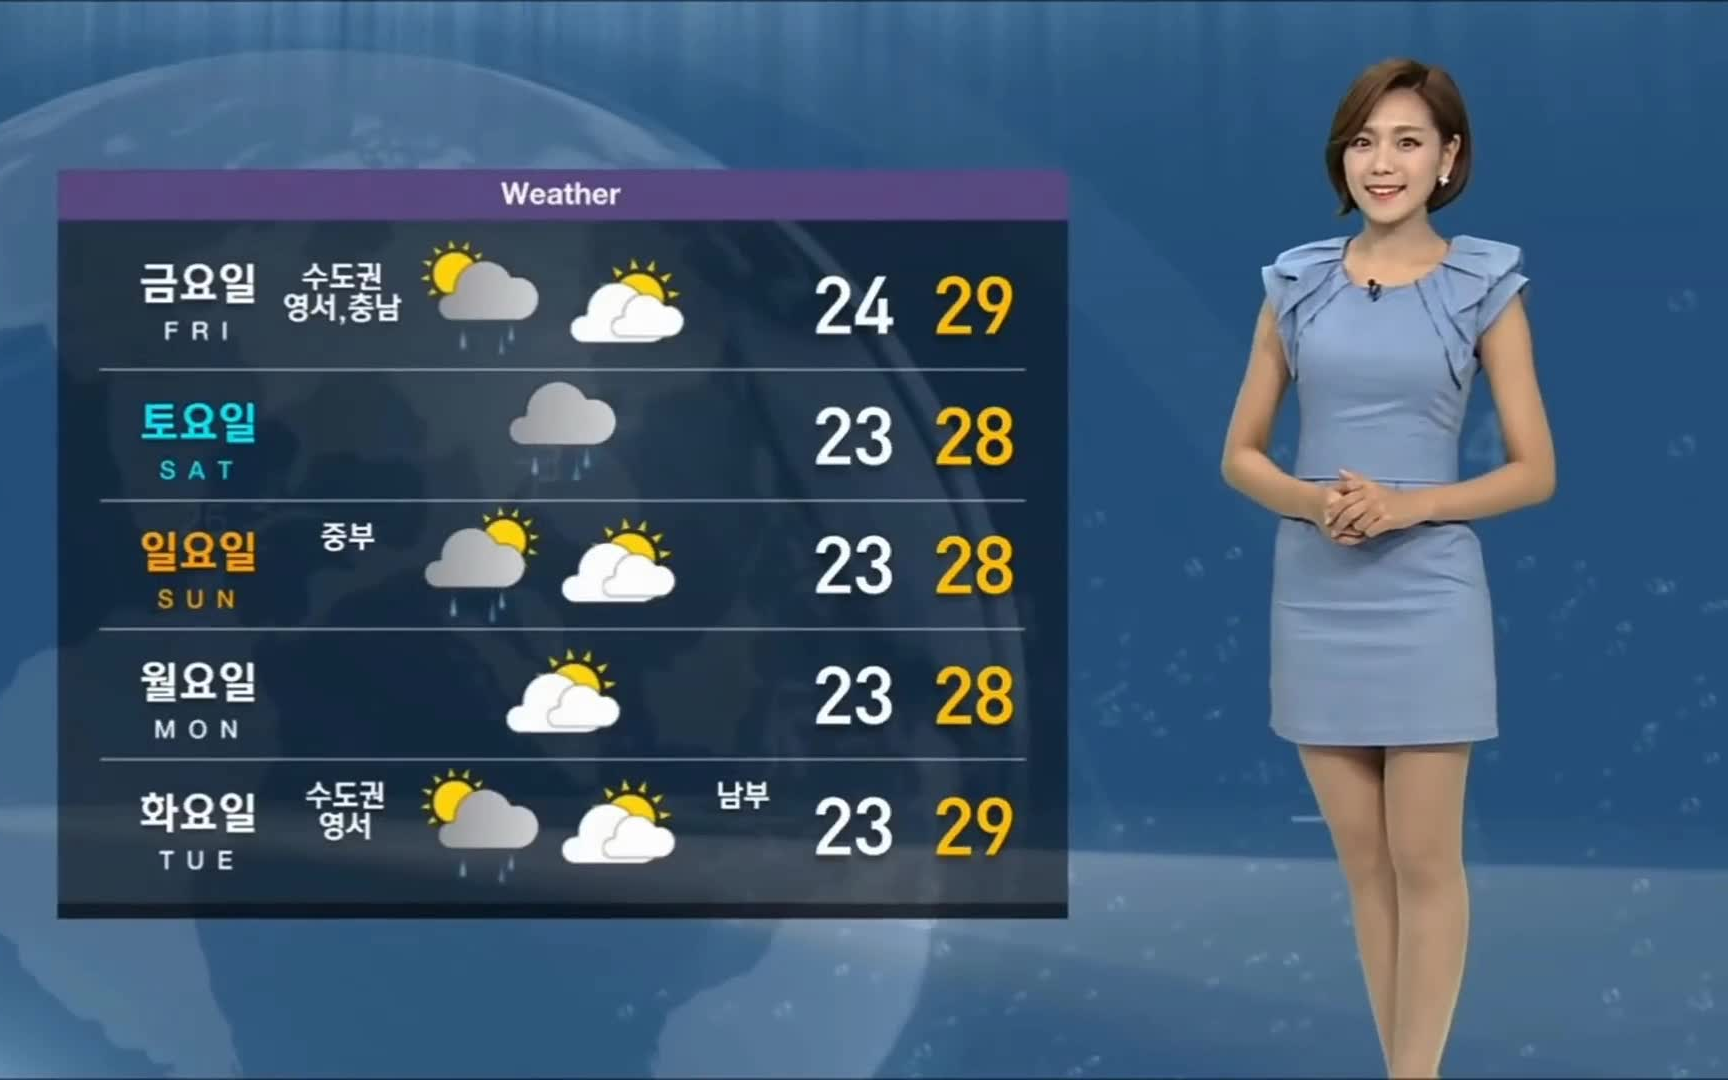 日本拥有美腿美颜的天气预报播报员